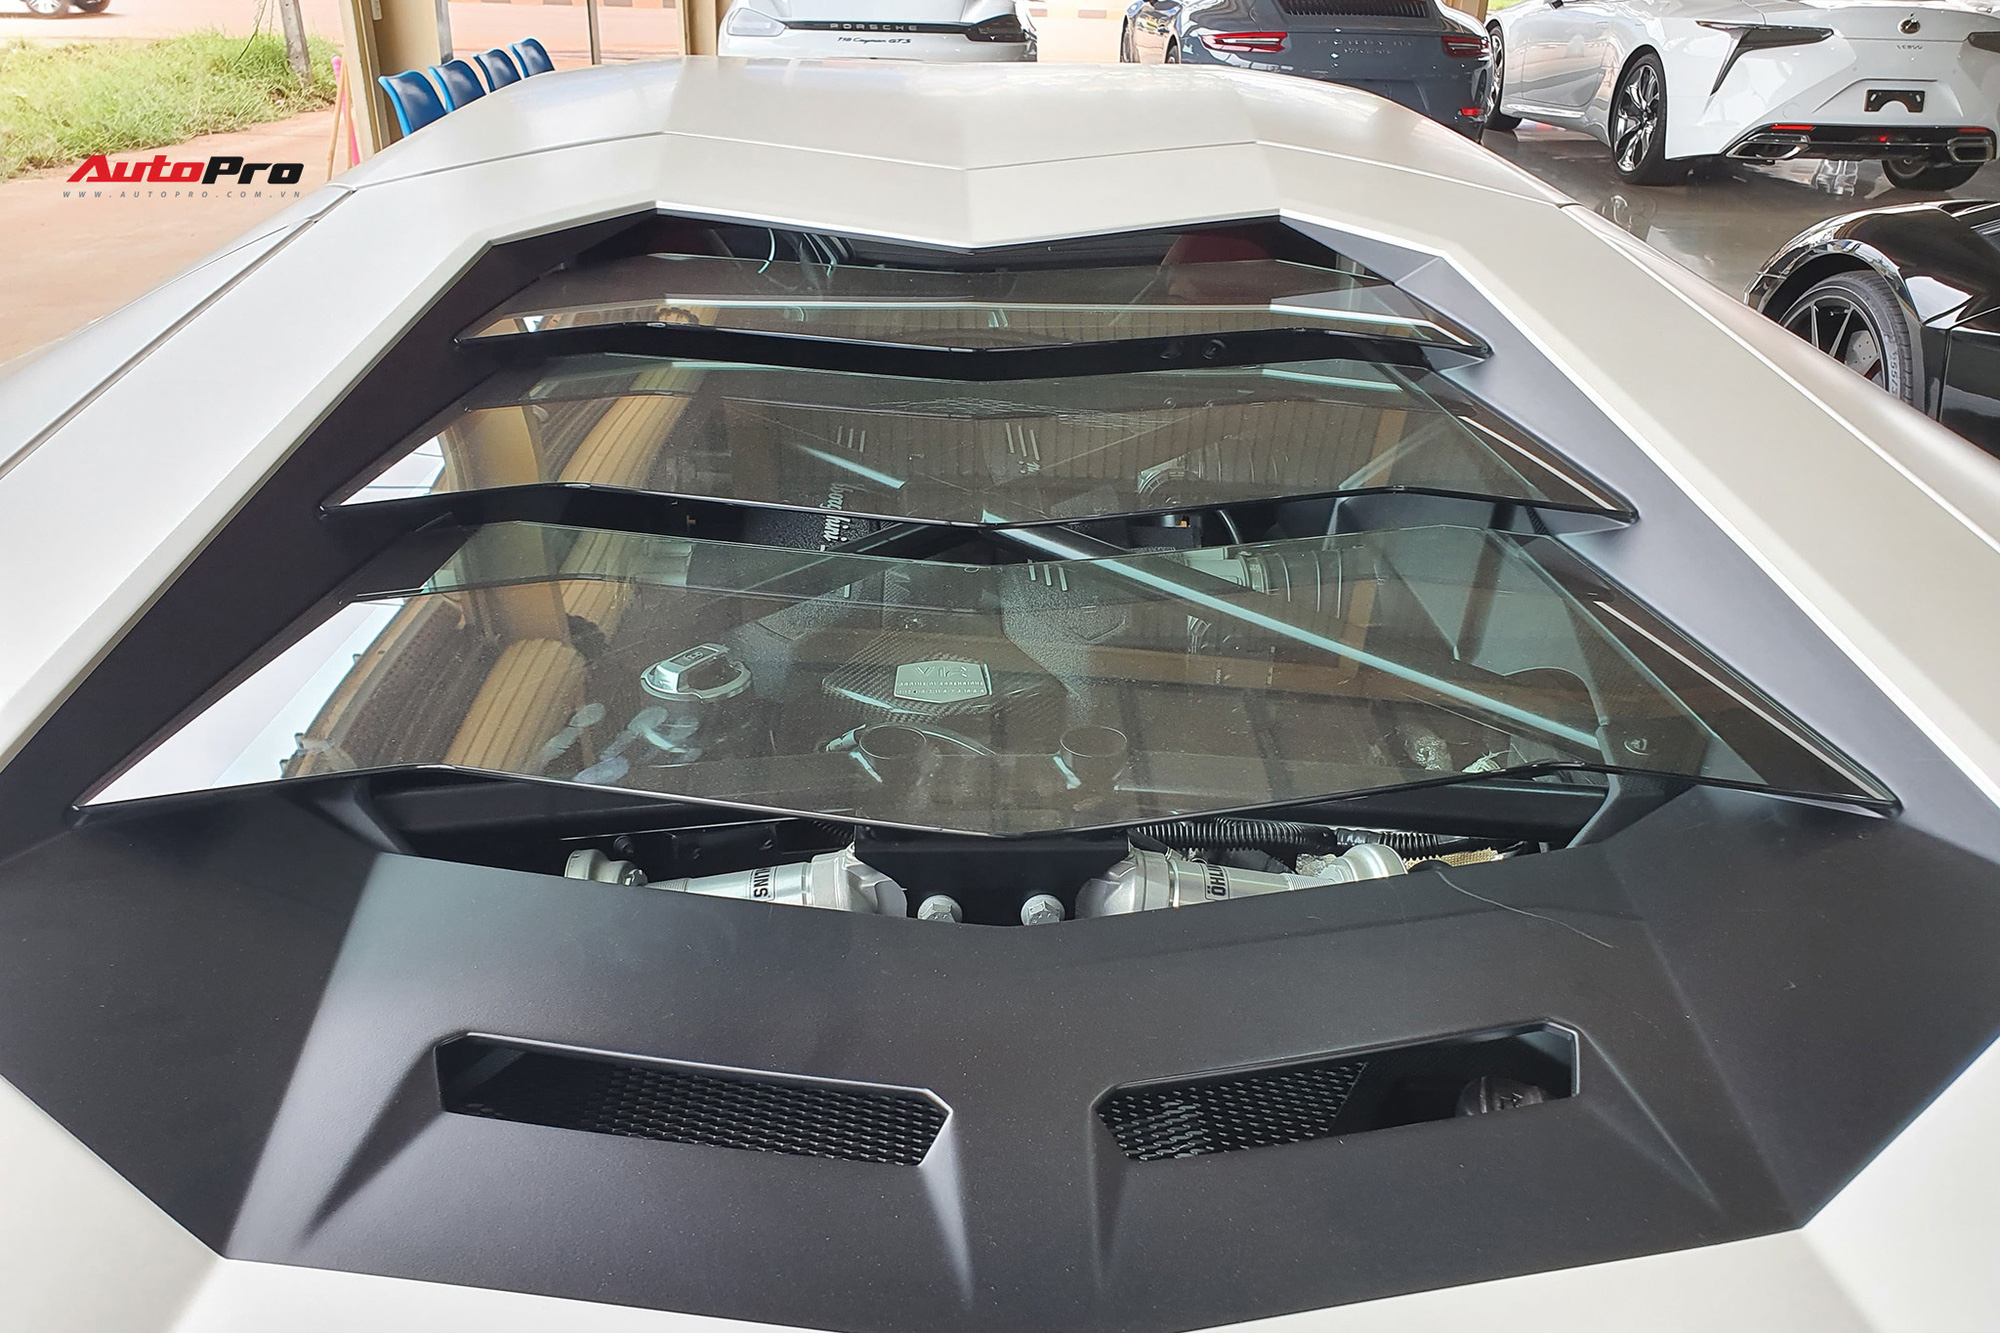 Thêm Lamborghini Aventador mới về Việt Nam: Siêu mới, chạy chỉ hơn 170 km/năm - Ảnh 4.